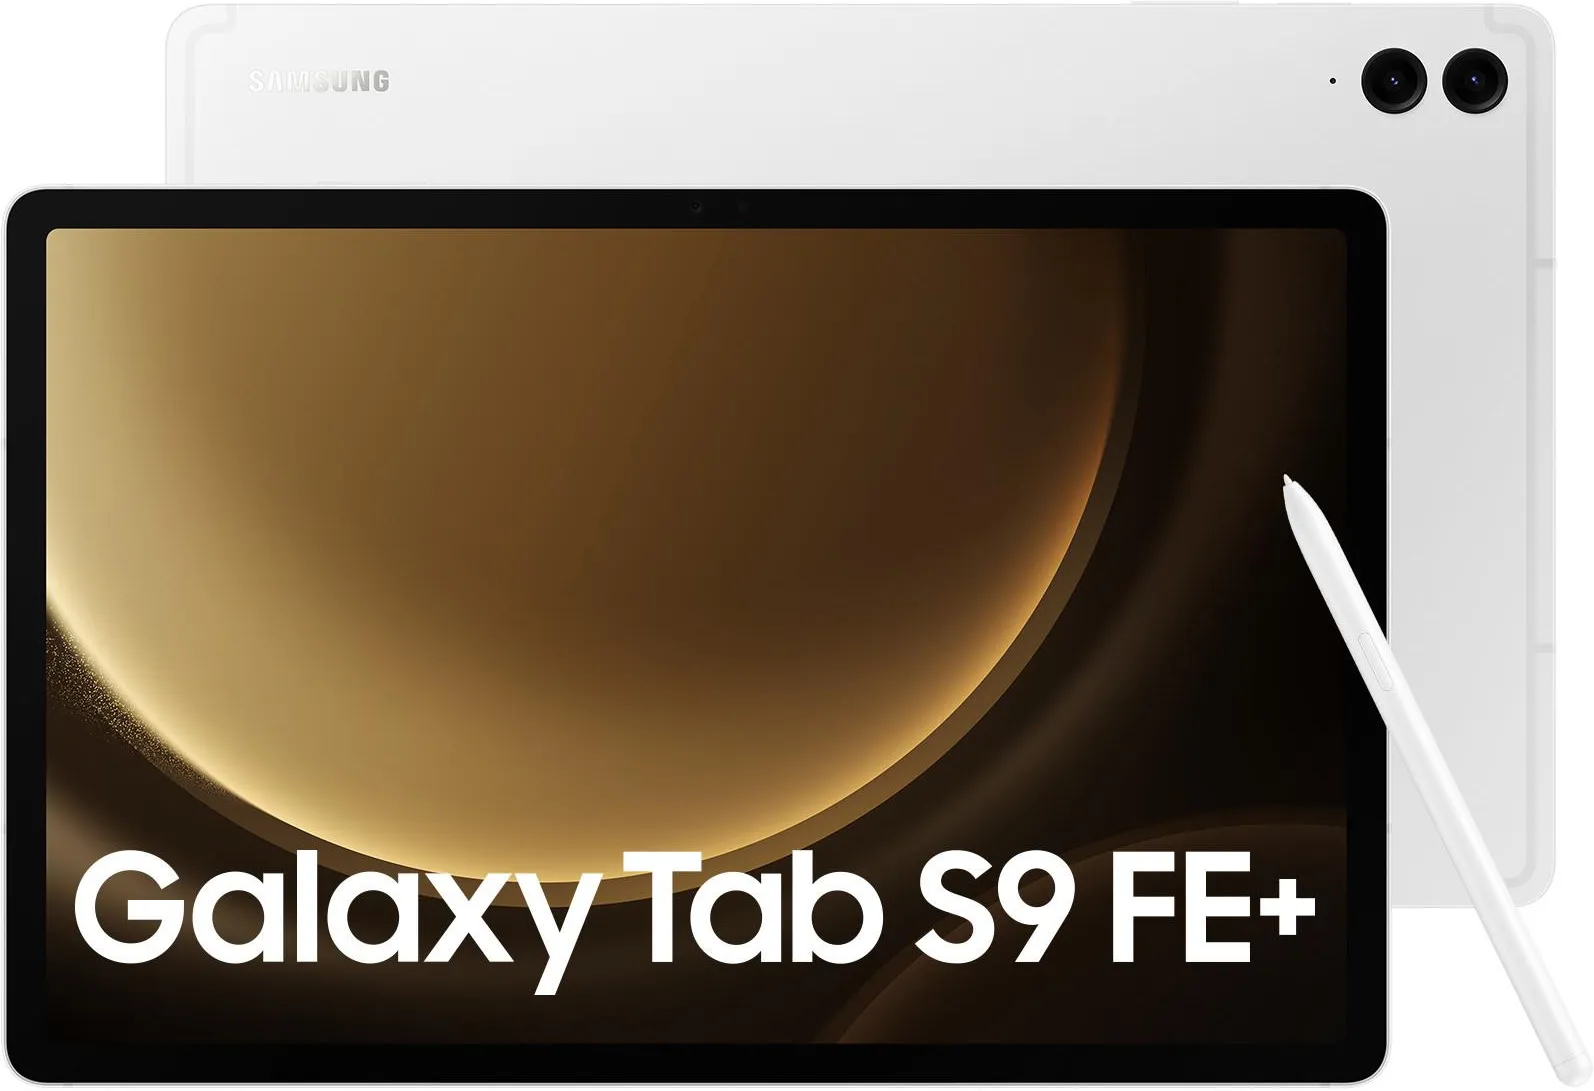 Samsung Galaxy Tab S9 FE+ - descripción y los parámetros